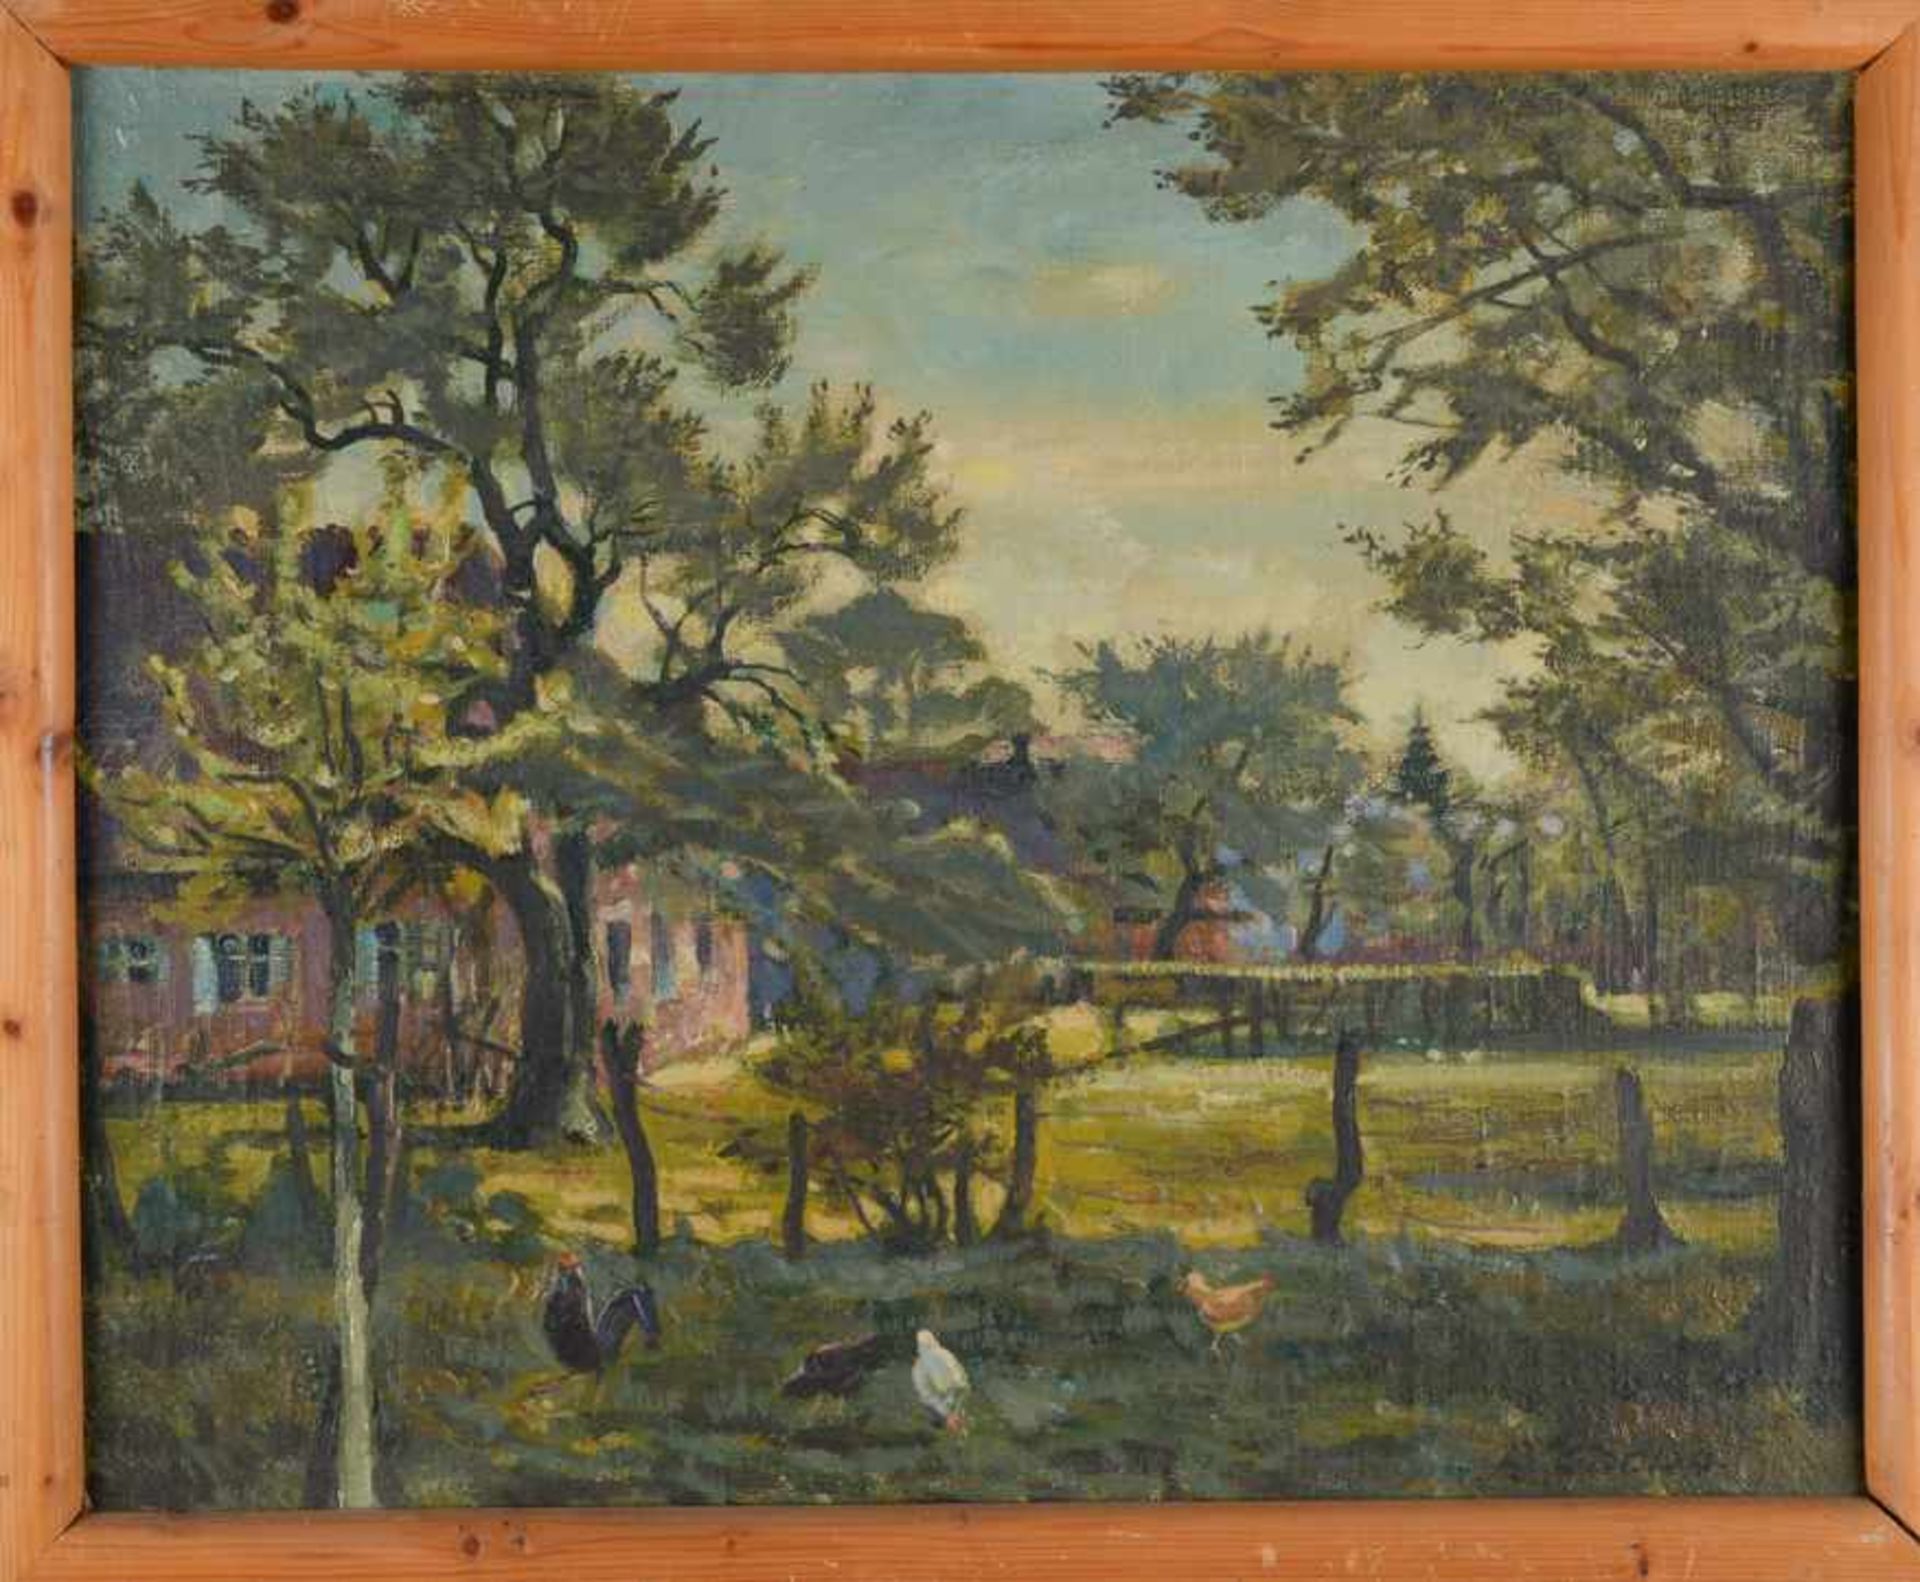 Gehöft, wohl bei Isernhagen, mit Hühnern. August Garbe (Niedersächsischer Kunstmaler, Akademie der